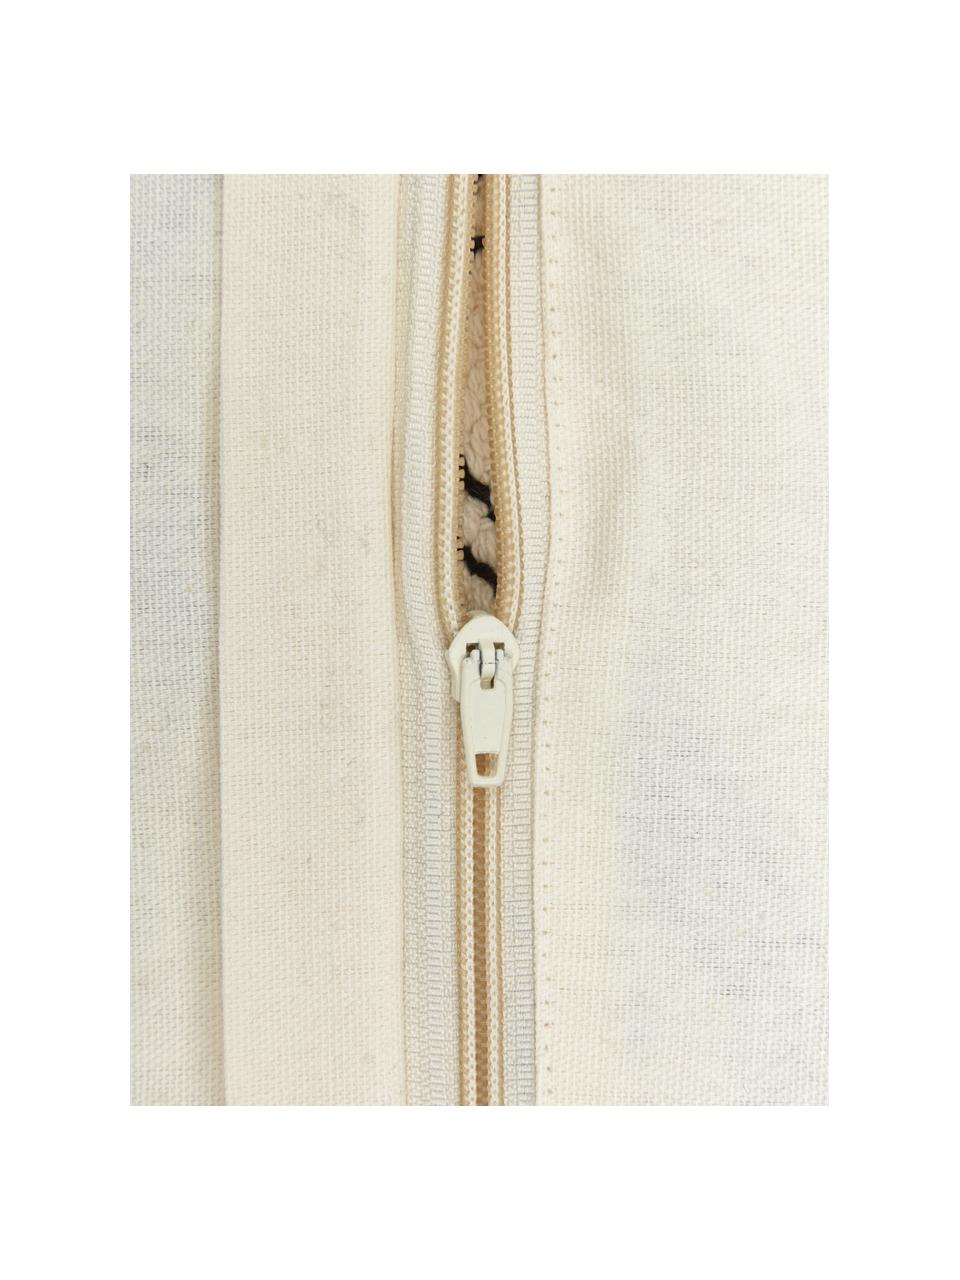 Kissenhülle Akesha mit getuftetem Zickzack-Muster, 100% Baumwolle, Off White, Schwarz, B 45 x L 45 cm